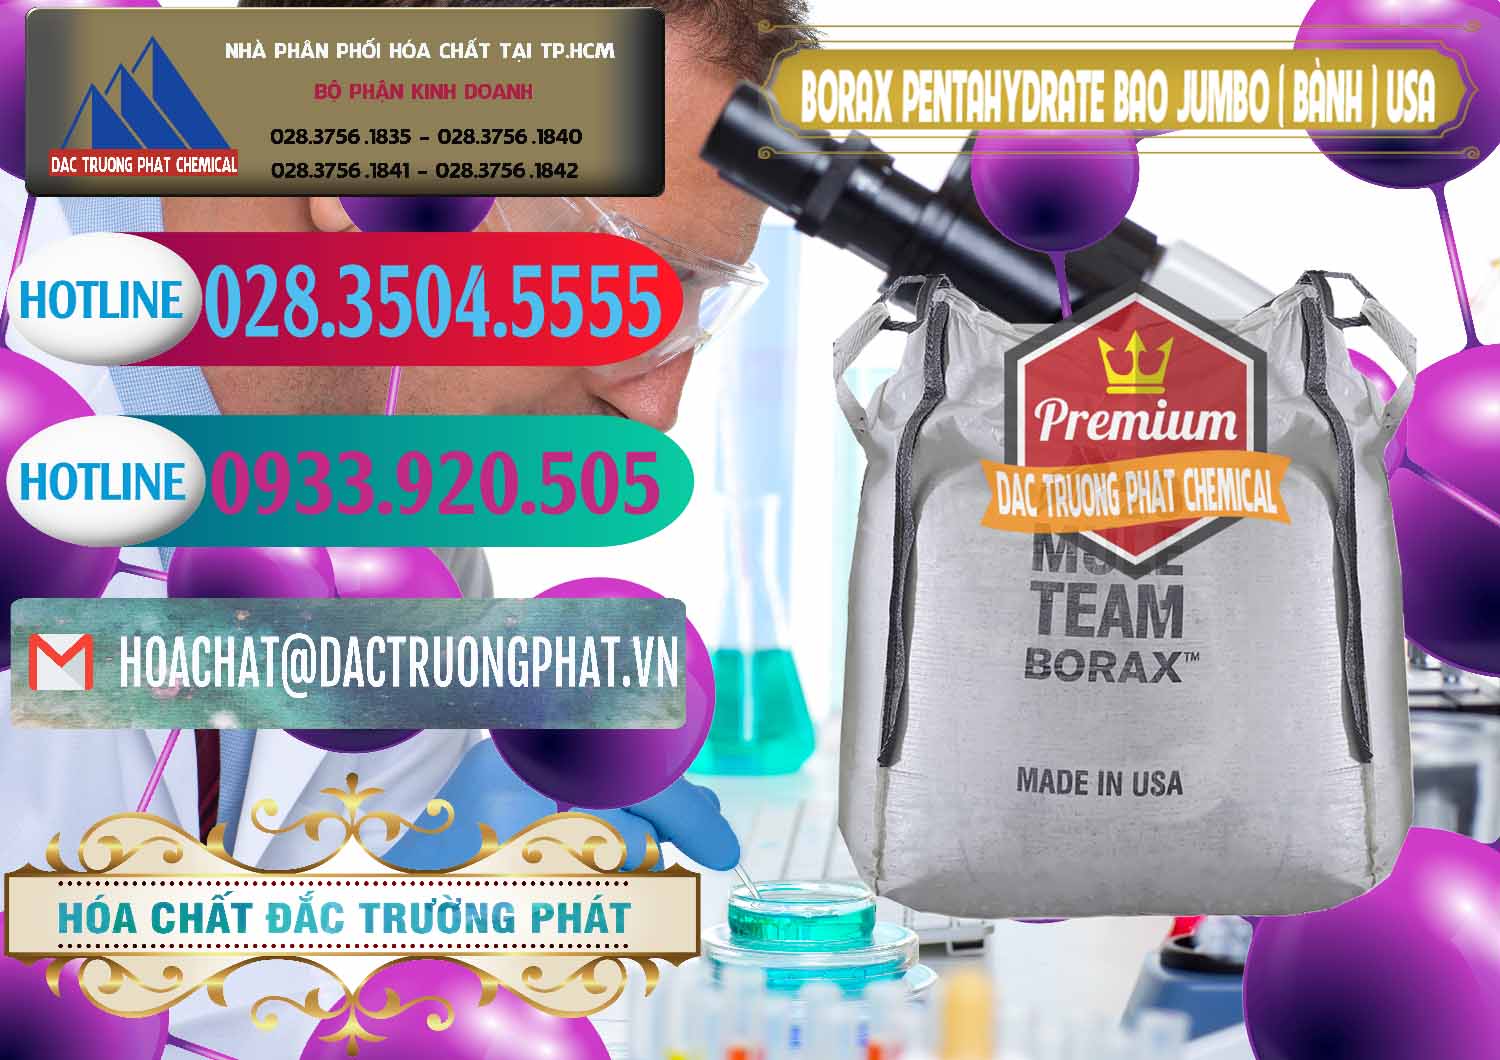 Phân phối ( bán ) Borax Pentahydrate Bao Jumbo ( Bành ) Mule 20 Team Mỹ Usa - 0278 - Công ty kinh doanh _ phân phối hóa chất tại TP.HCM - truongphat.vn